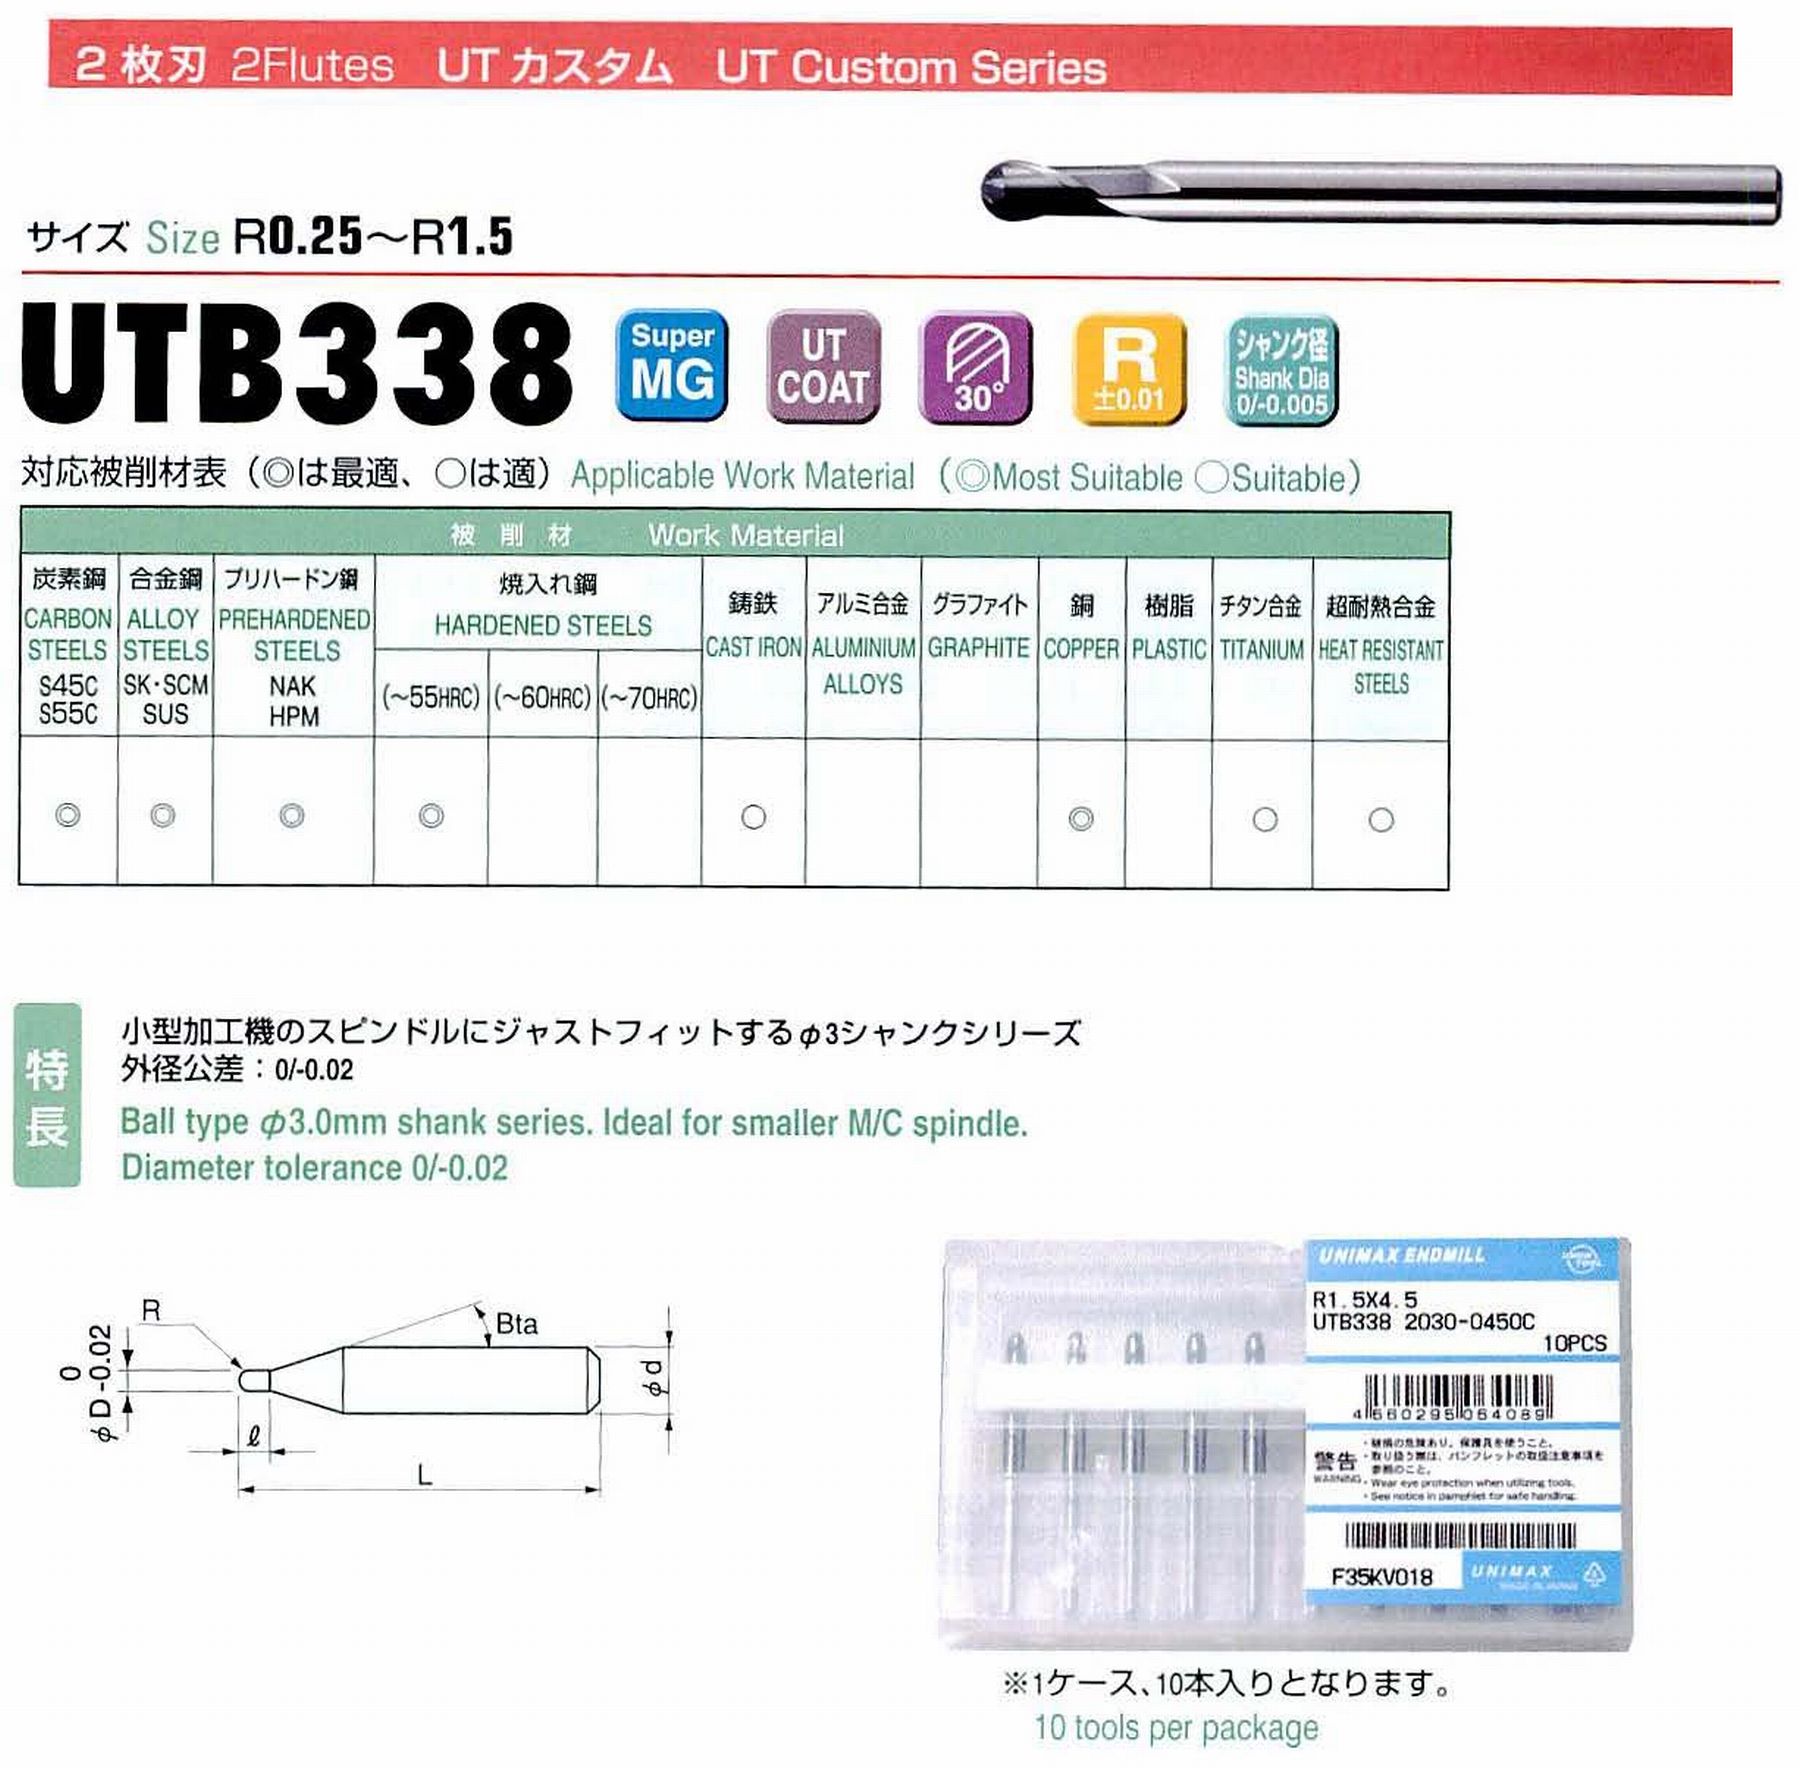 ユニオンツール 2枚刃 UTB338 2030-0450C ボール半径R1.5 刃長4.5 シャンクテーパ角- 全長38 シャンク径3